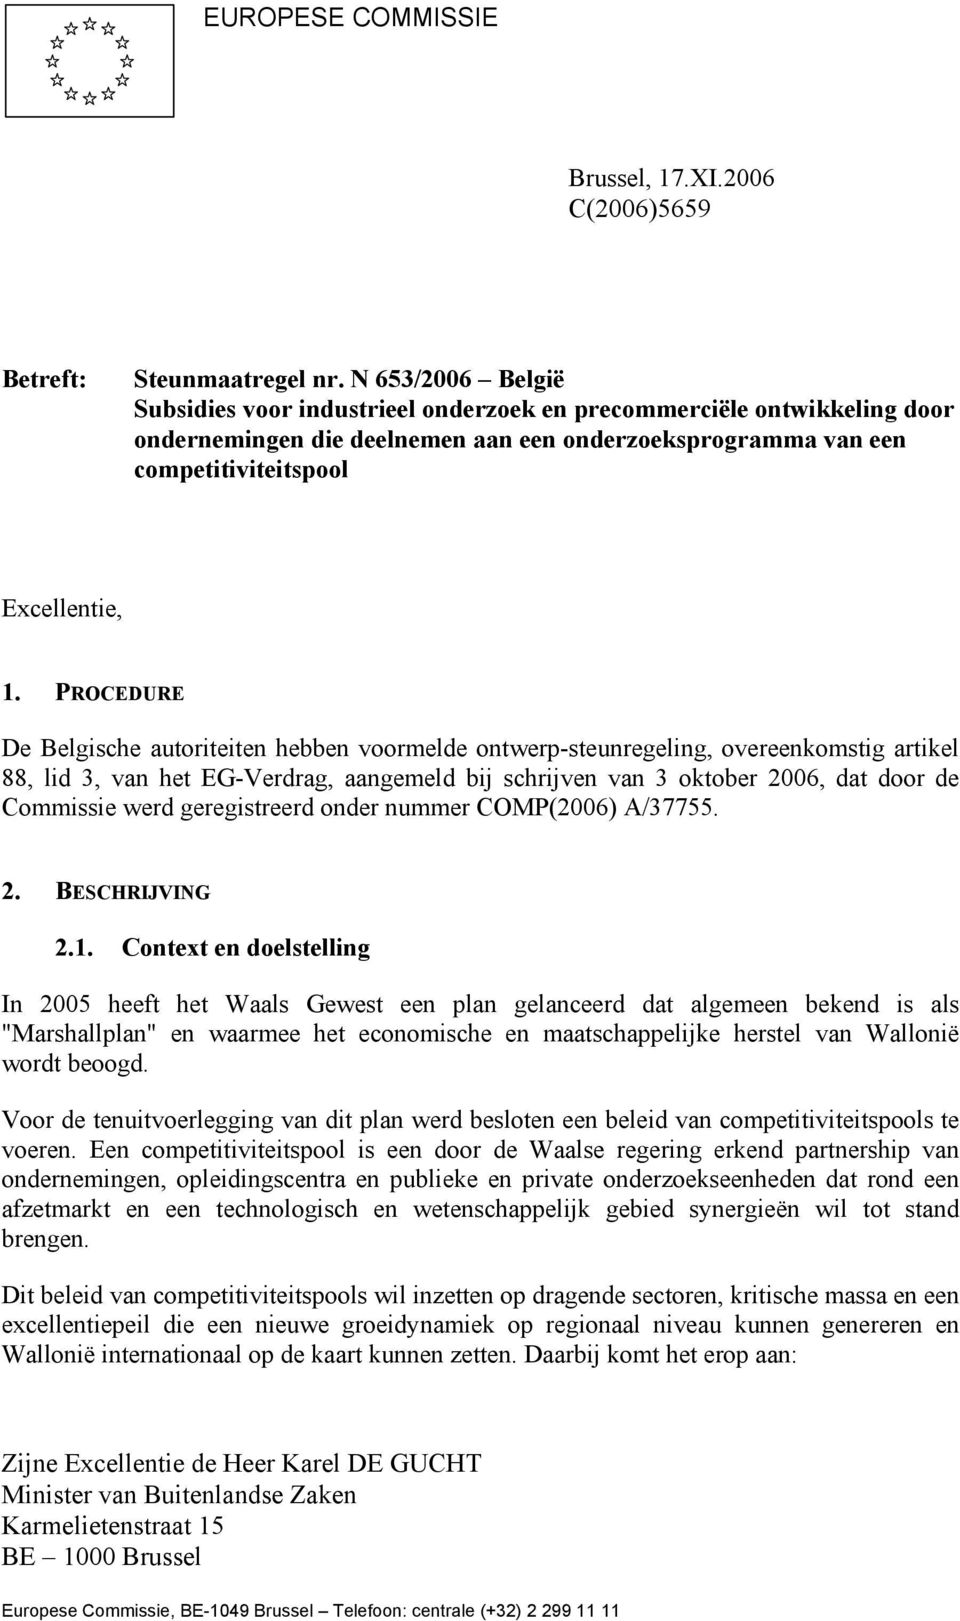 PROCEDURE De Belgische autoriteiten hebben voormelde ontwerp-steunregeling, overeenkomstig artikel 88, lid 3, van het EG-Verdrag, aangemeld bij schrijven van 3 oktober 2006, dat door de Commissie